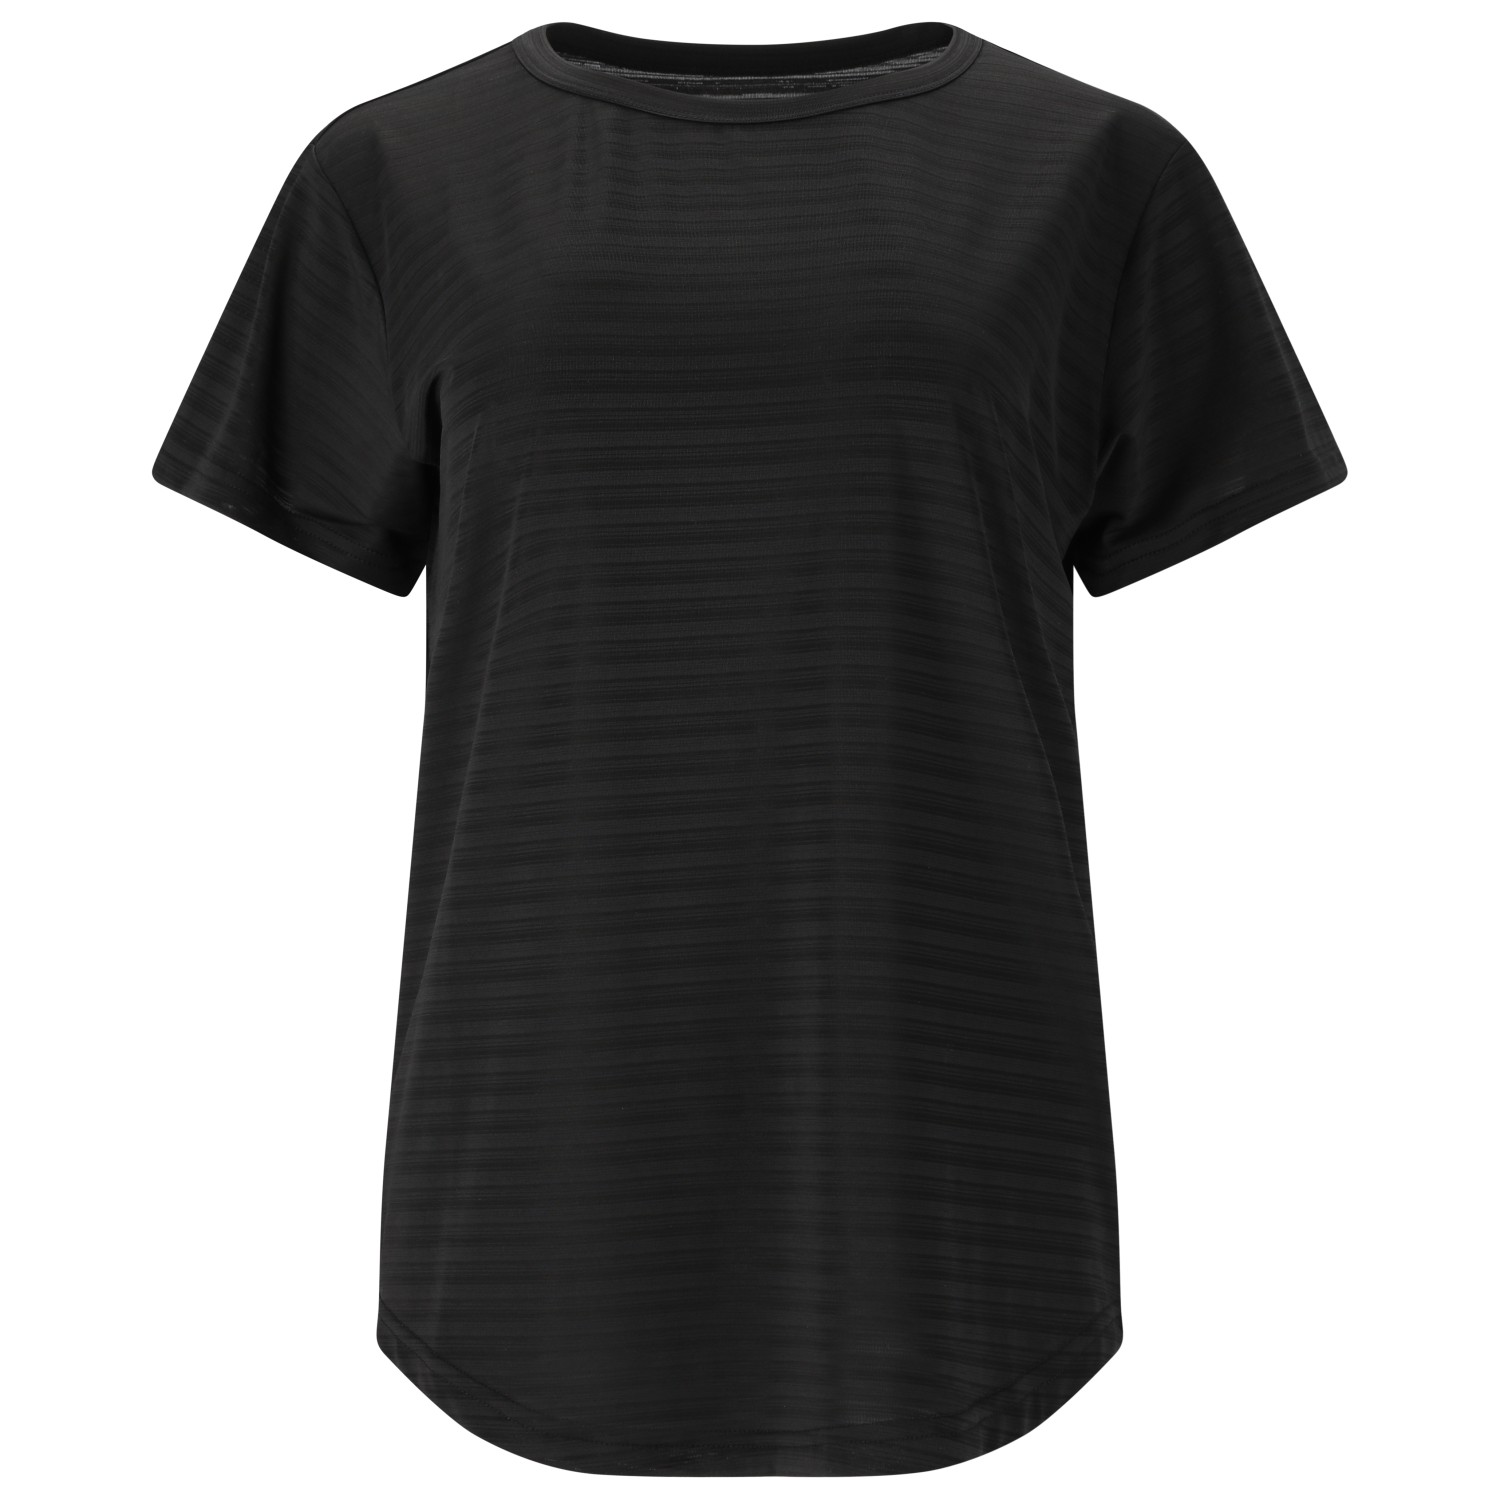 Функциональная рубашка Whistler Women's Skylon Striped S/S Tee, черный фото